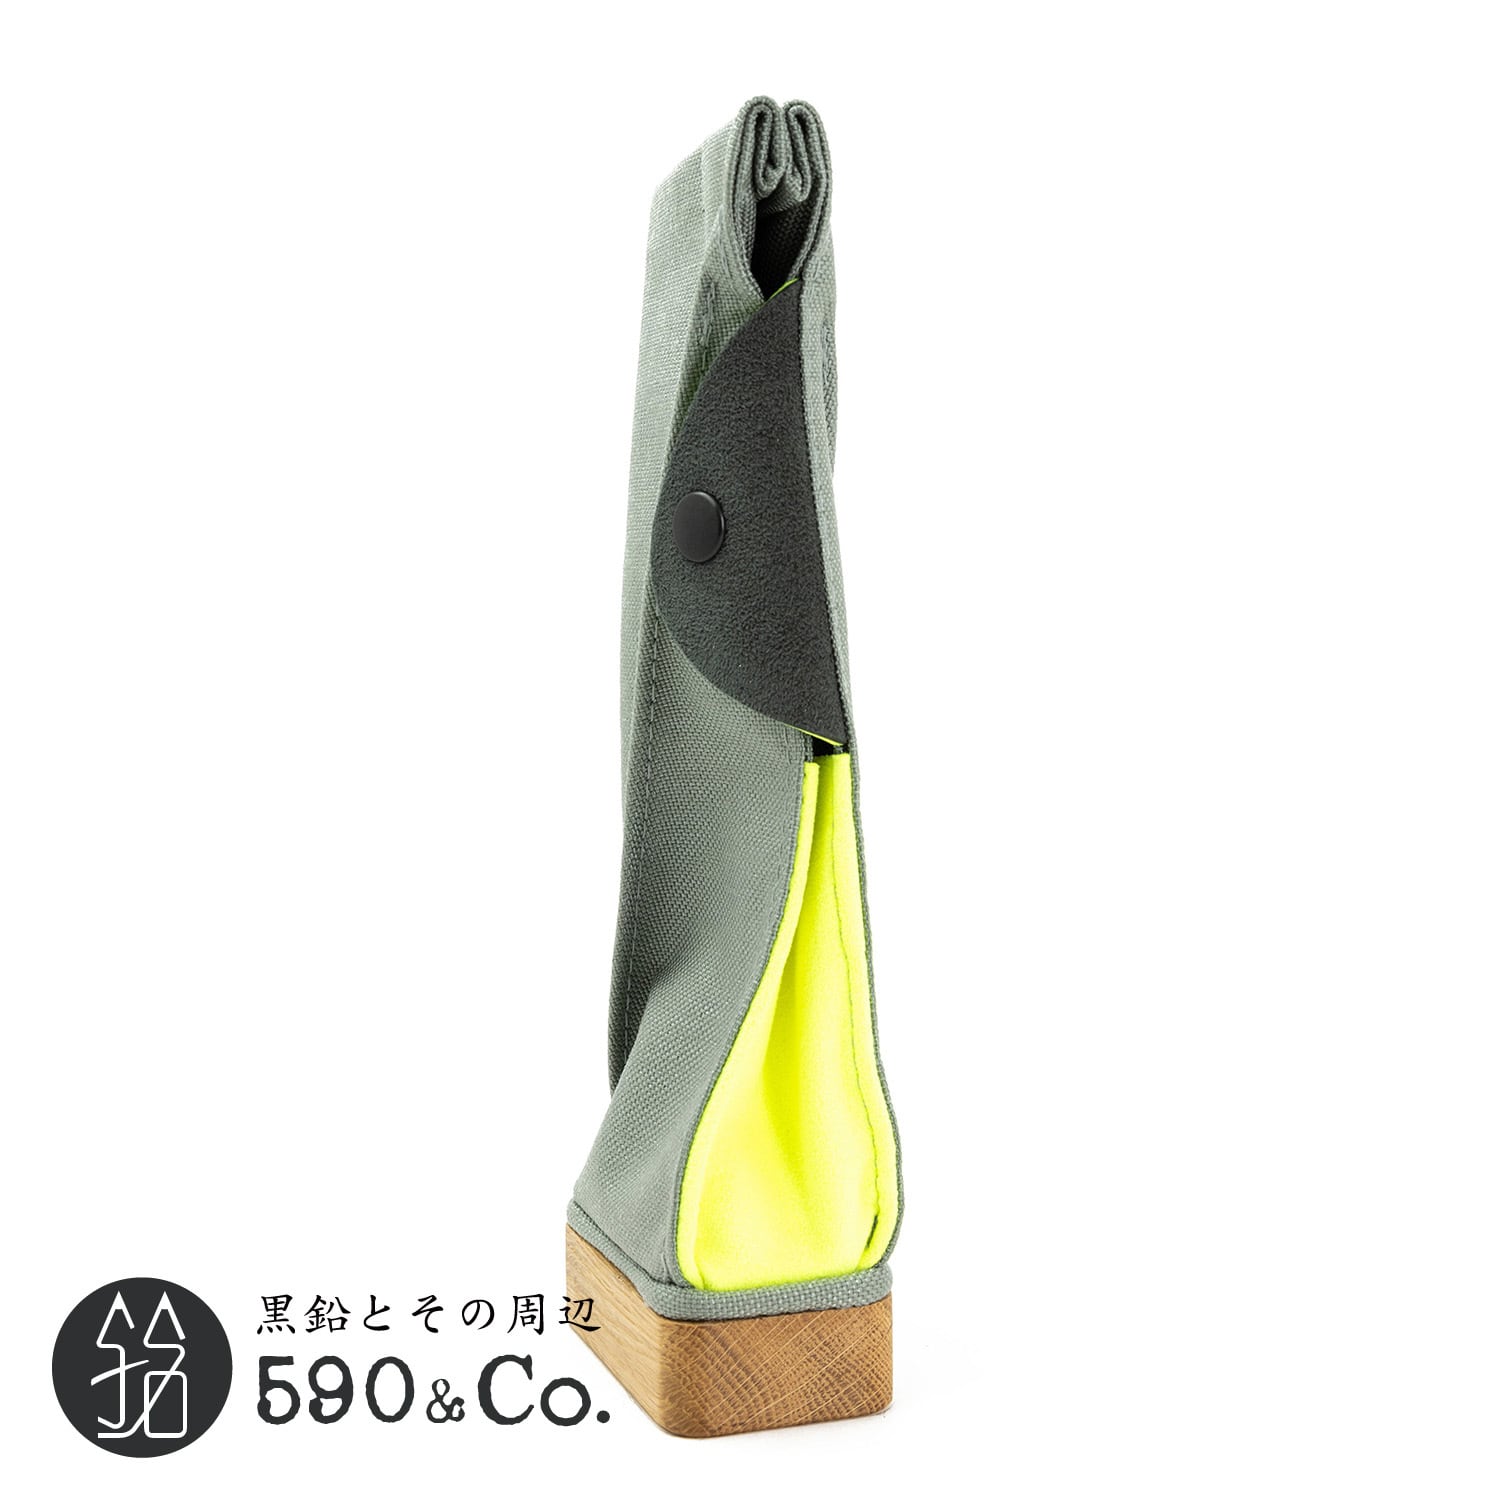 キナリ木工所】PENSTAND/CASE woodsole (gray/yellow) 590Co.